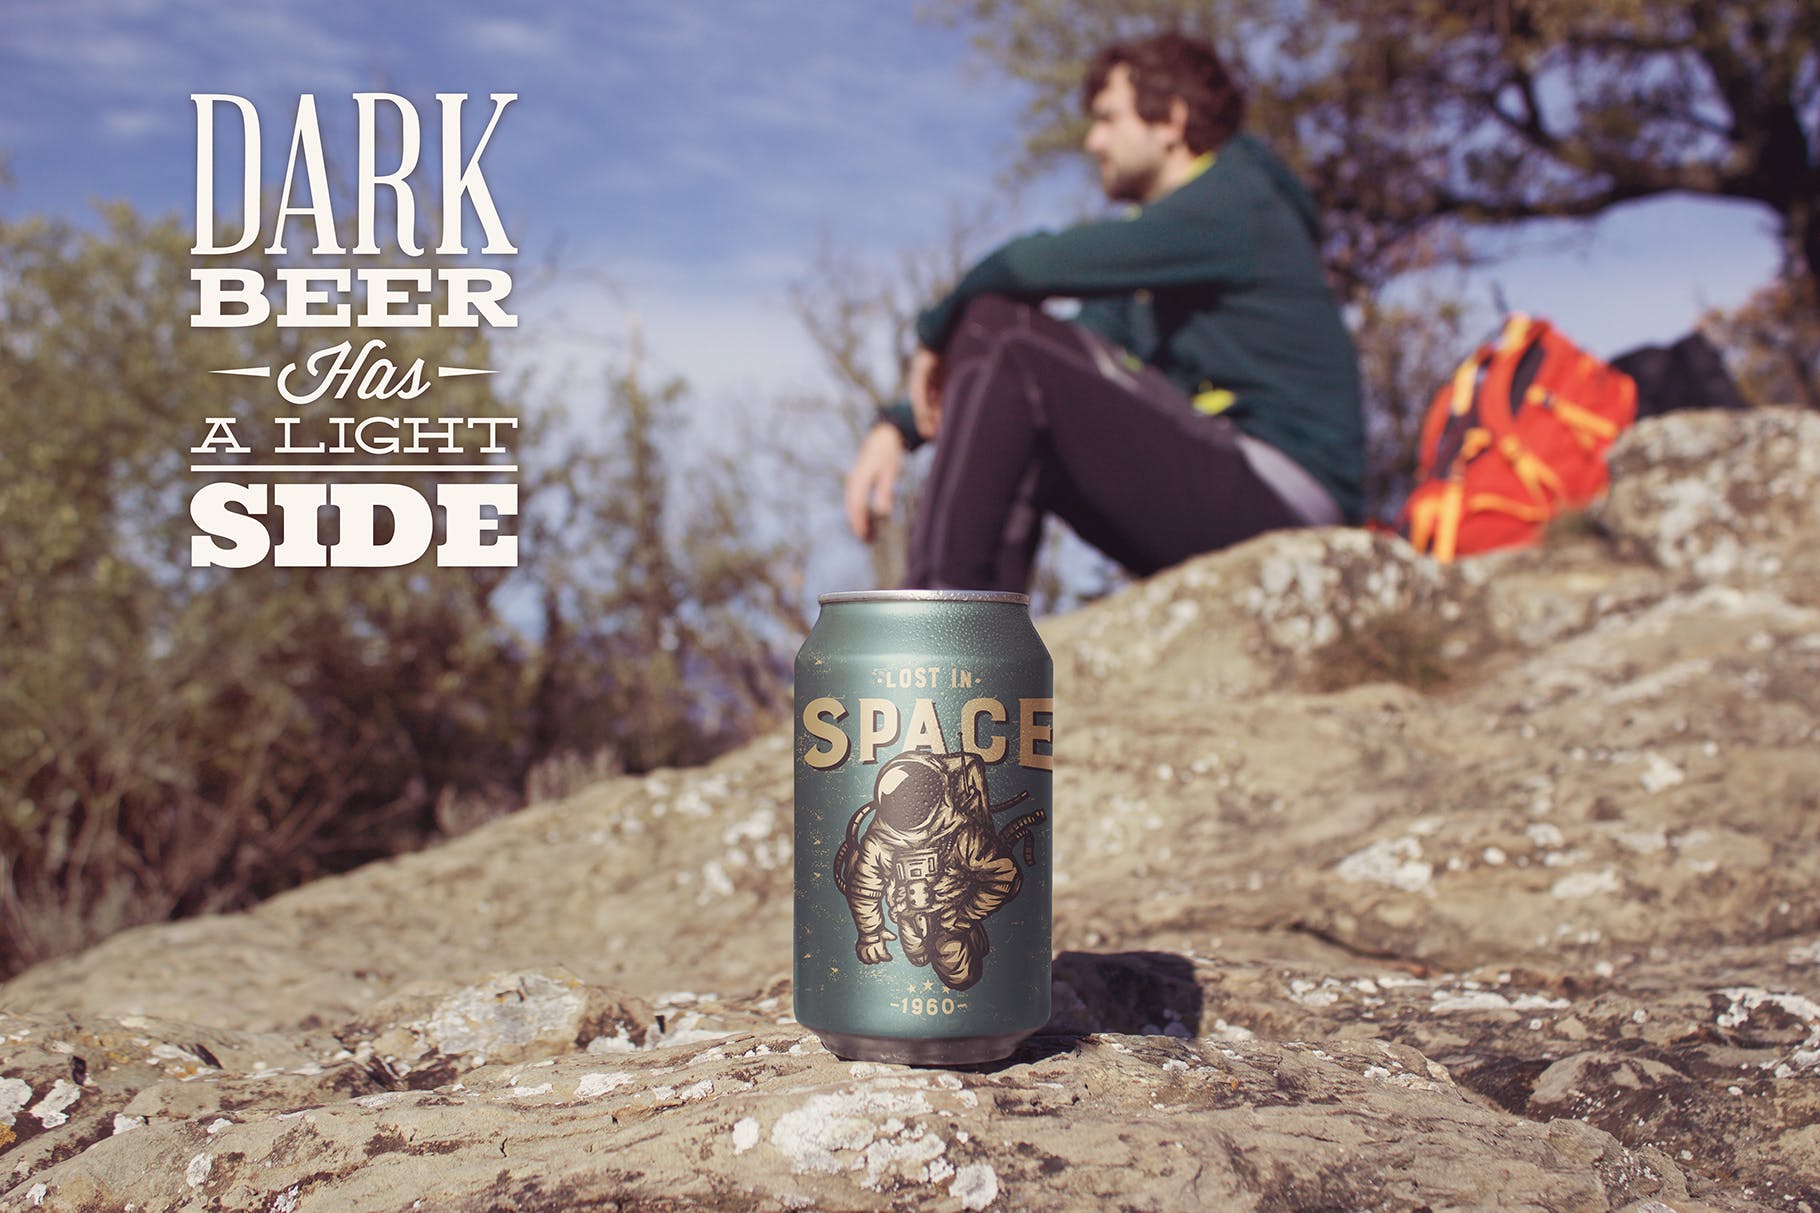 啤酒易拉罐野外拍摄场景素材库精选1 Trekking Beer Can Mockup插图(2)